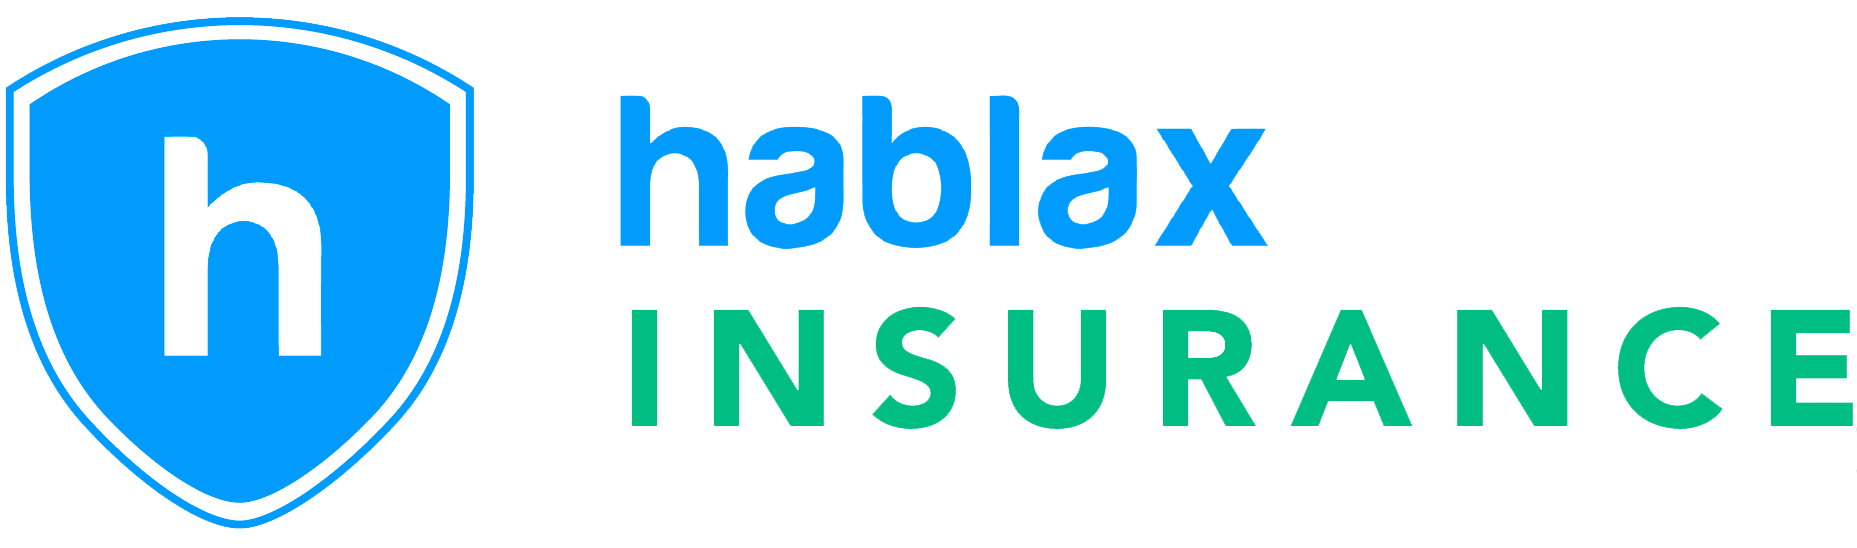 Hablax Insurance